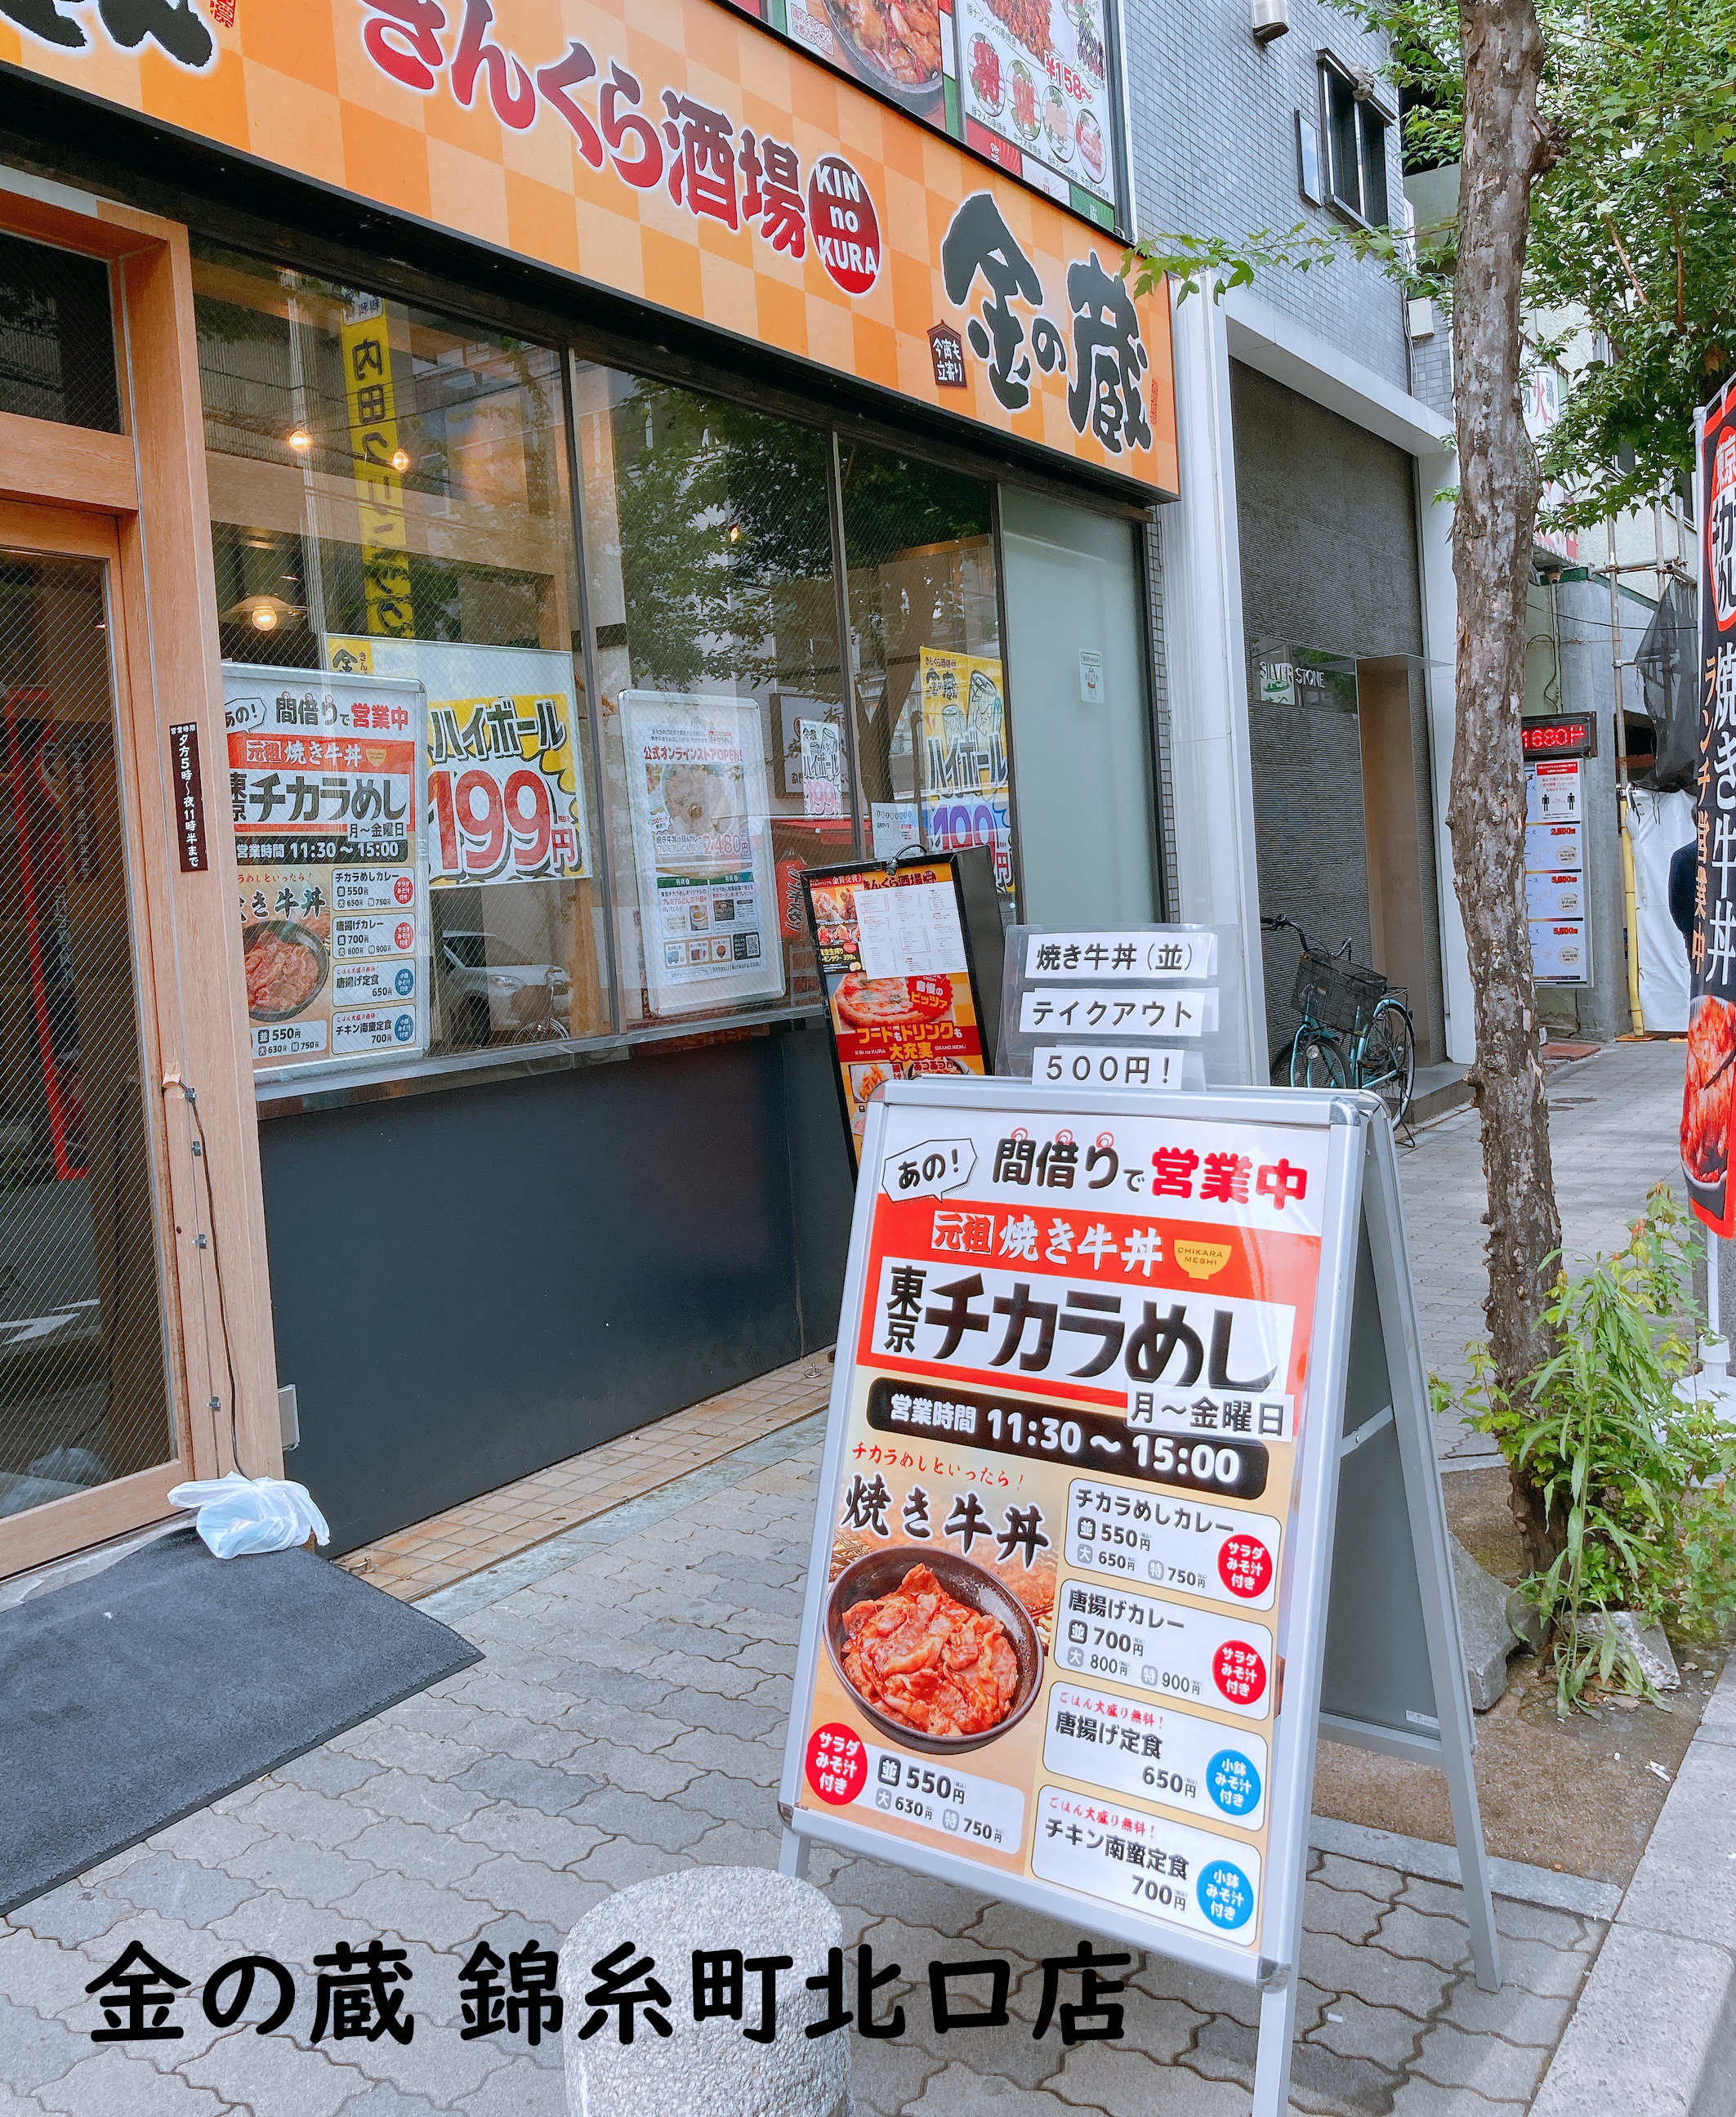 絶滅危機の 東京チカラめし が意外な場所で食える 居酒屋 金の蔵 で間借り営業を開始してた ロケットニュース24